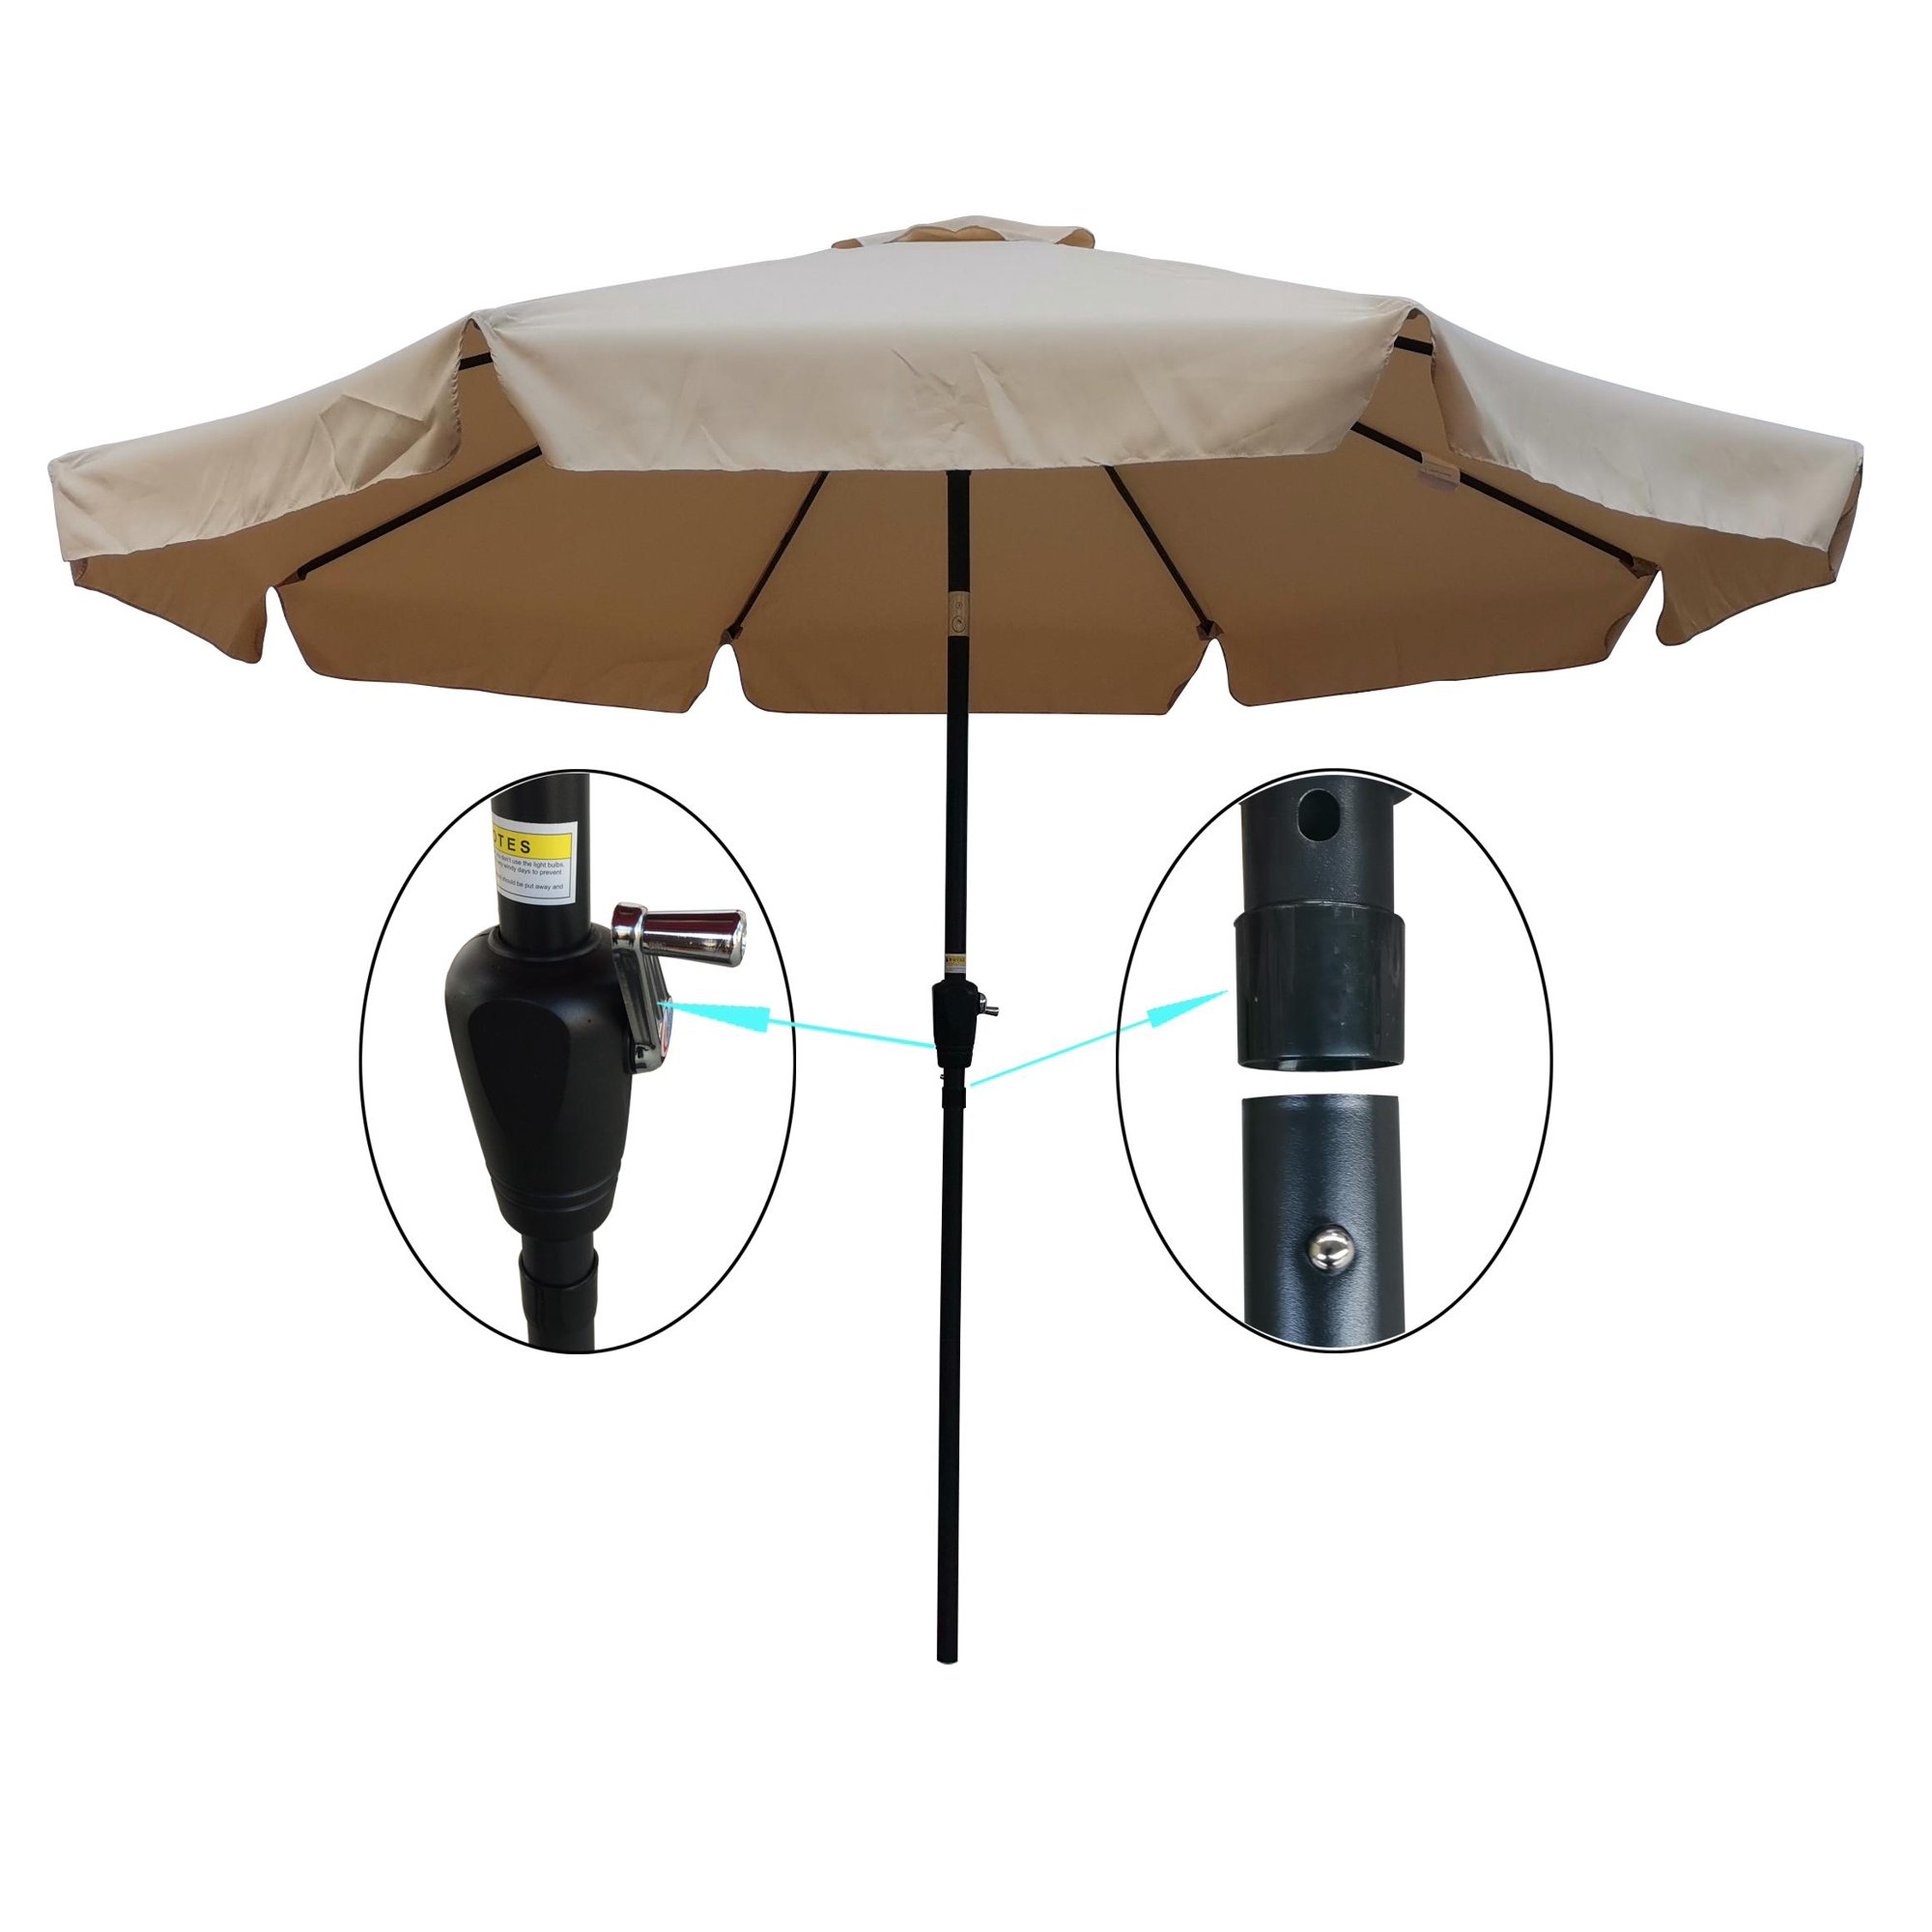 10 FT Patio Table Umbrella, Round Heavy-Duty Market Umbrella, Patio Beach Umbrella, Outdoor Garden Wind Vent Umbrellas with Crank and Push Button Tilt for Backyard Deck Pool Shade, Tan